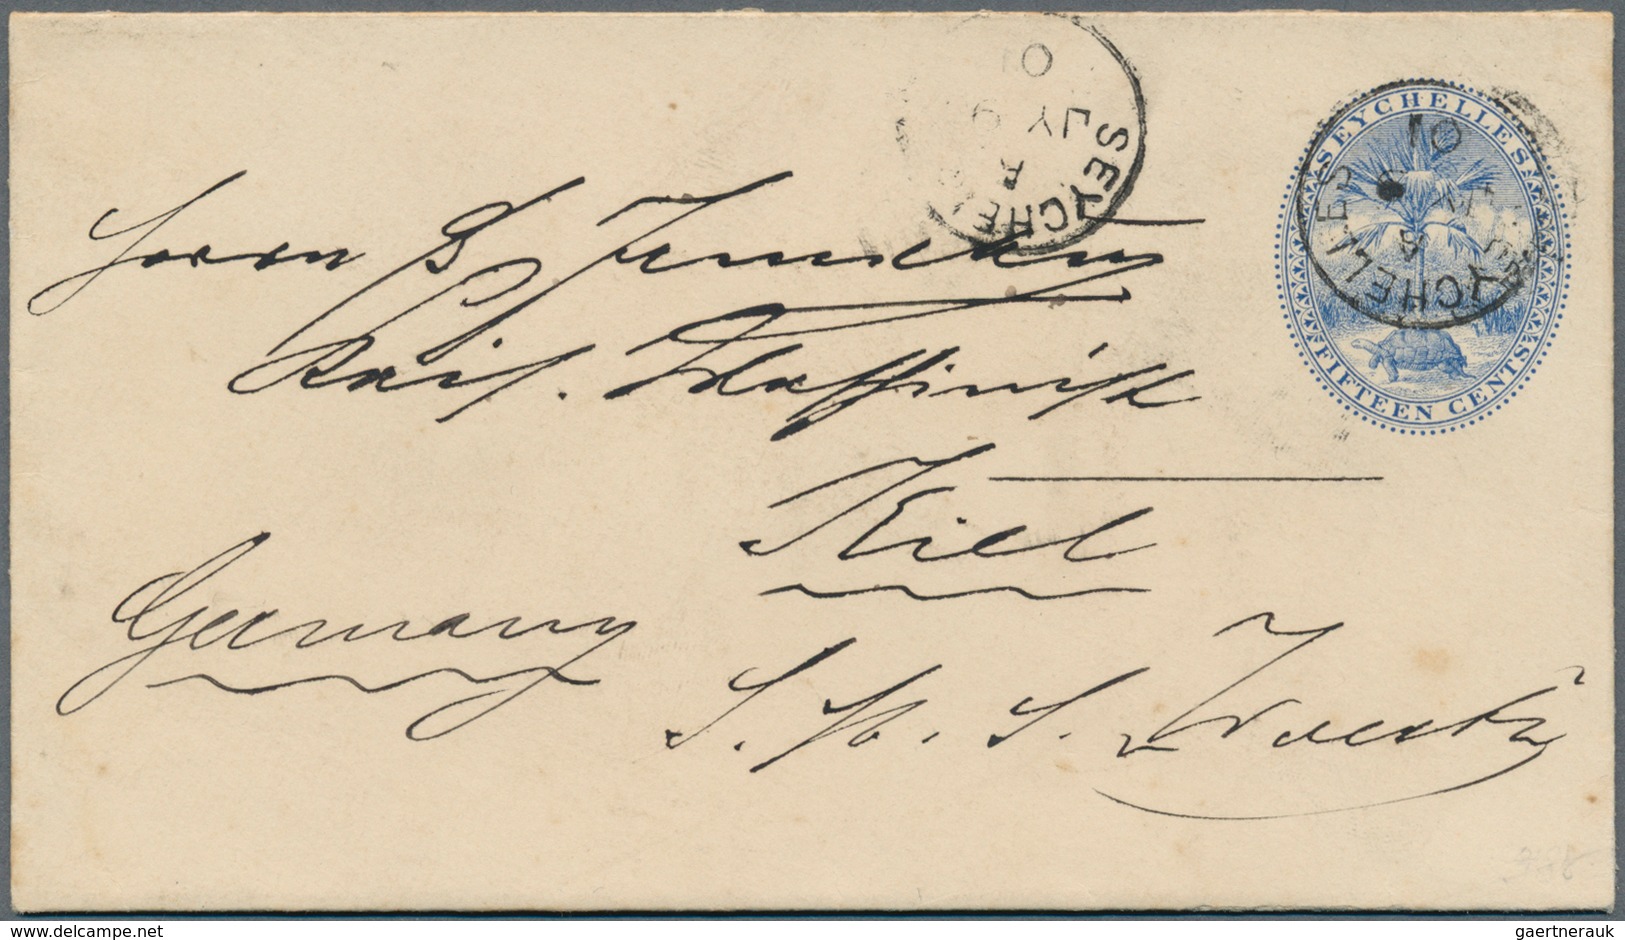 Seychellen: 1901, Stationery Envelope 15 C. Blue Sent From "SEYCHELLES A JY 9 01" To Kiel, Germany, - Seychelles (...-1976)